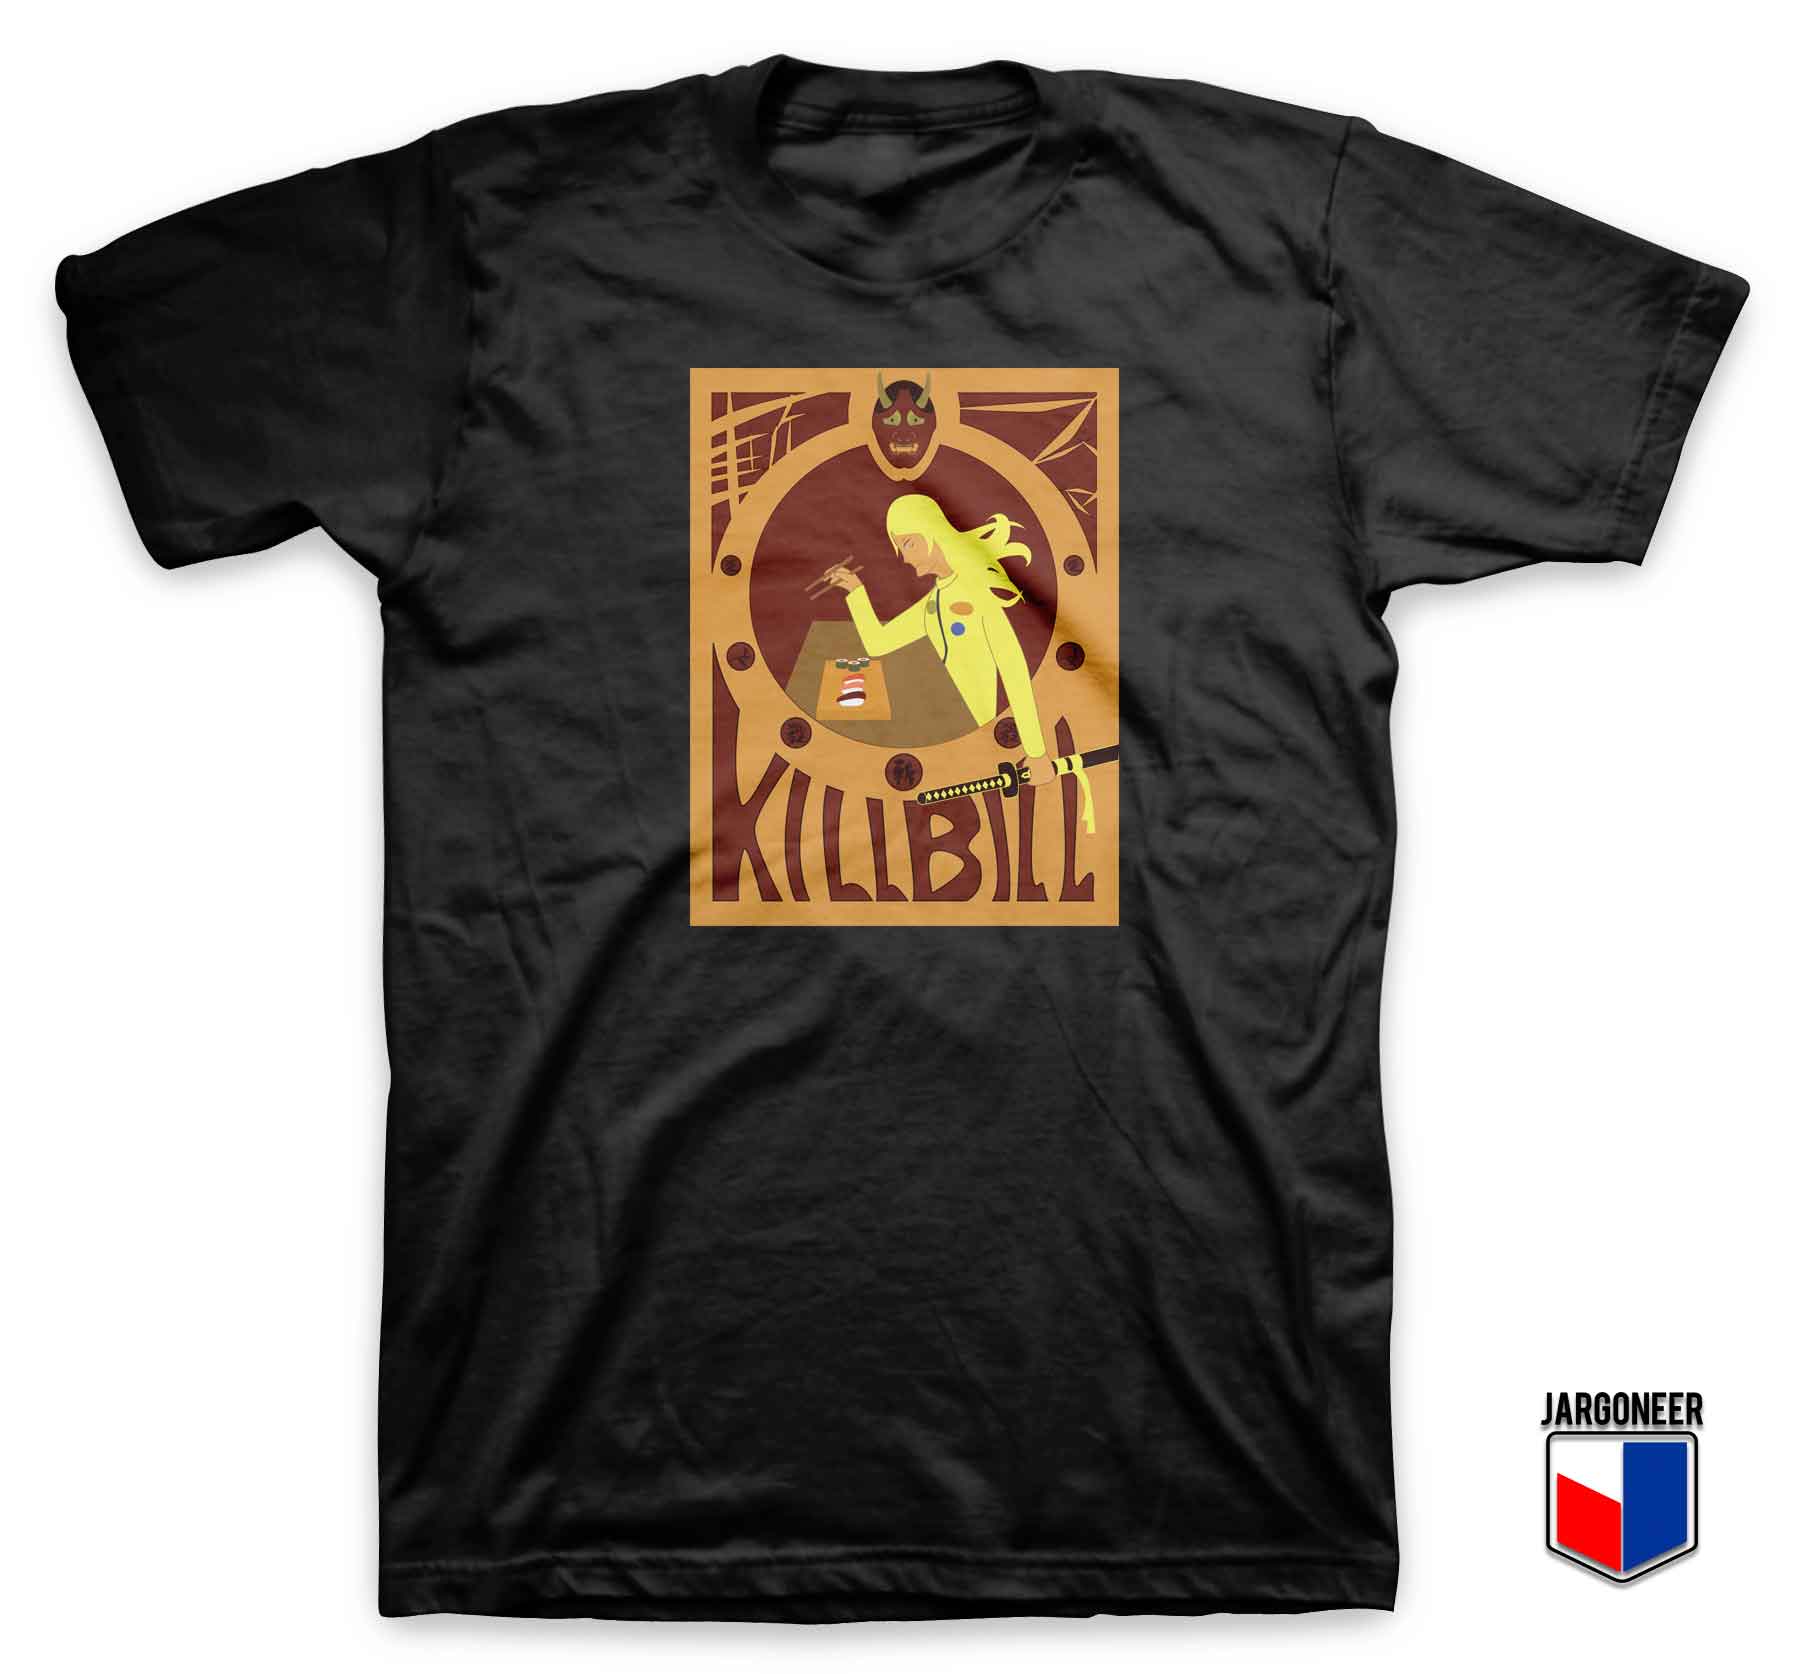 Kill Bill Sushi - Shop Unique Graphic Cool Shirt Designs